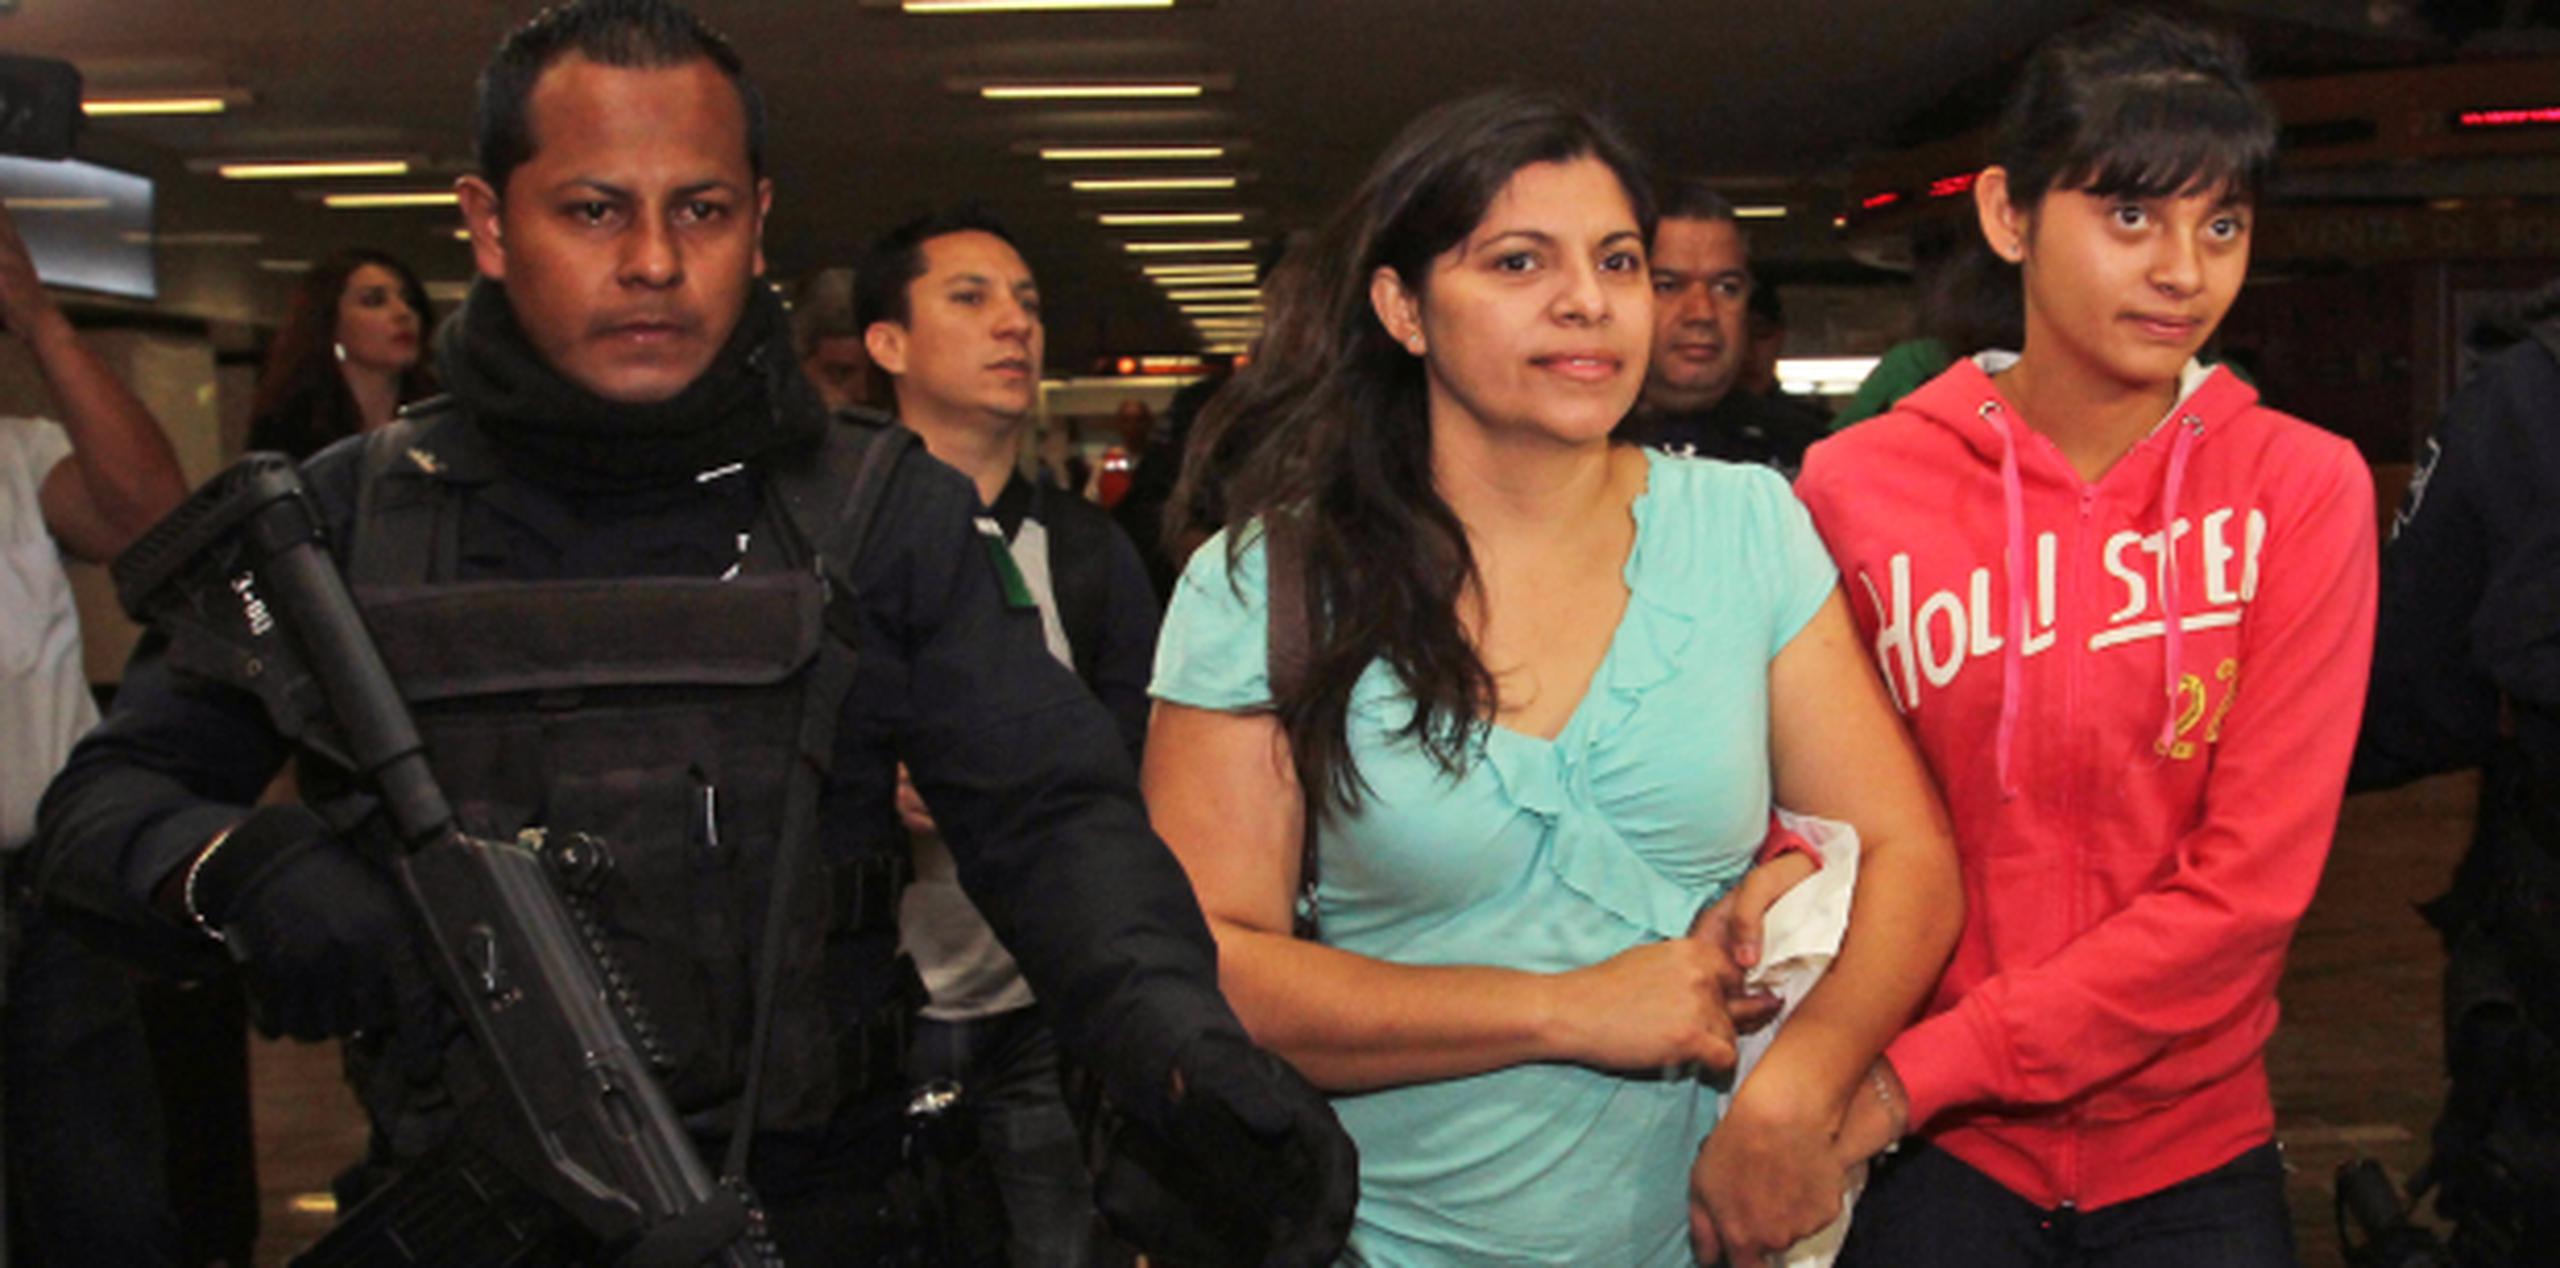 Con vigilancia policial y los brazos entrelazados, Dorotea García y su hija Alondra Díaz caminaban juntas por el aeropuerto de Guadalajara luego de 8 años separadas. (AP)